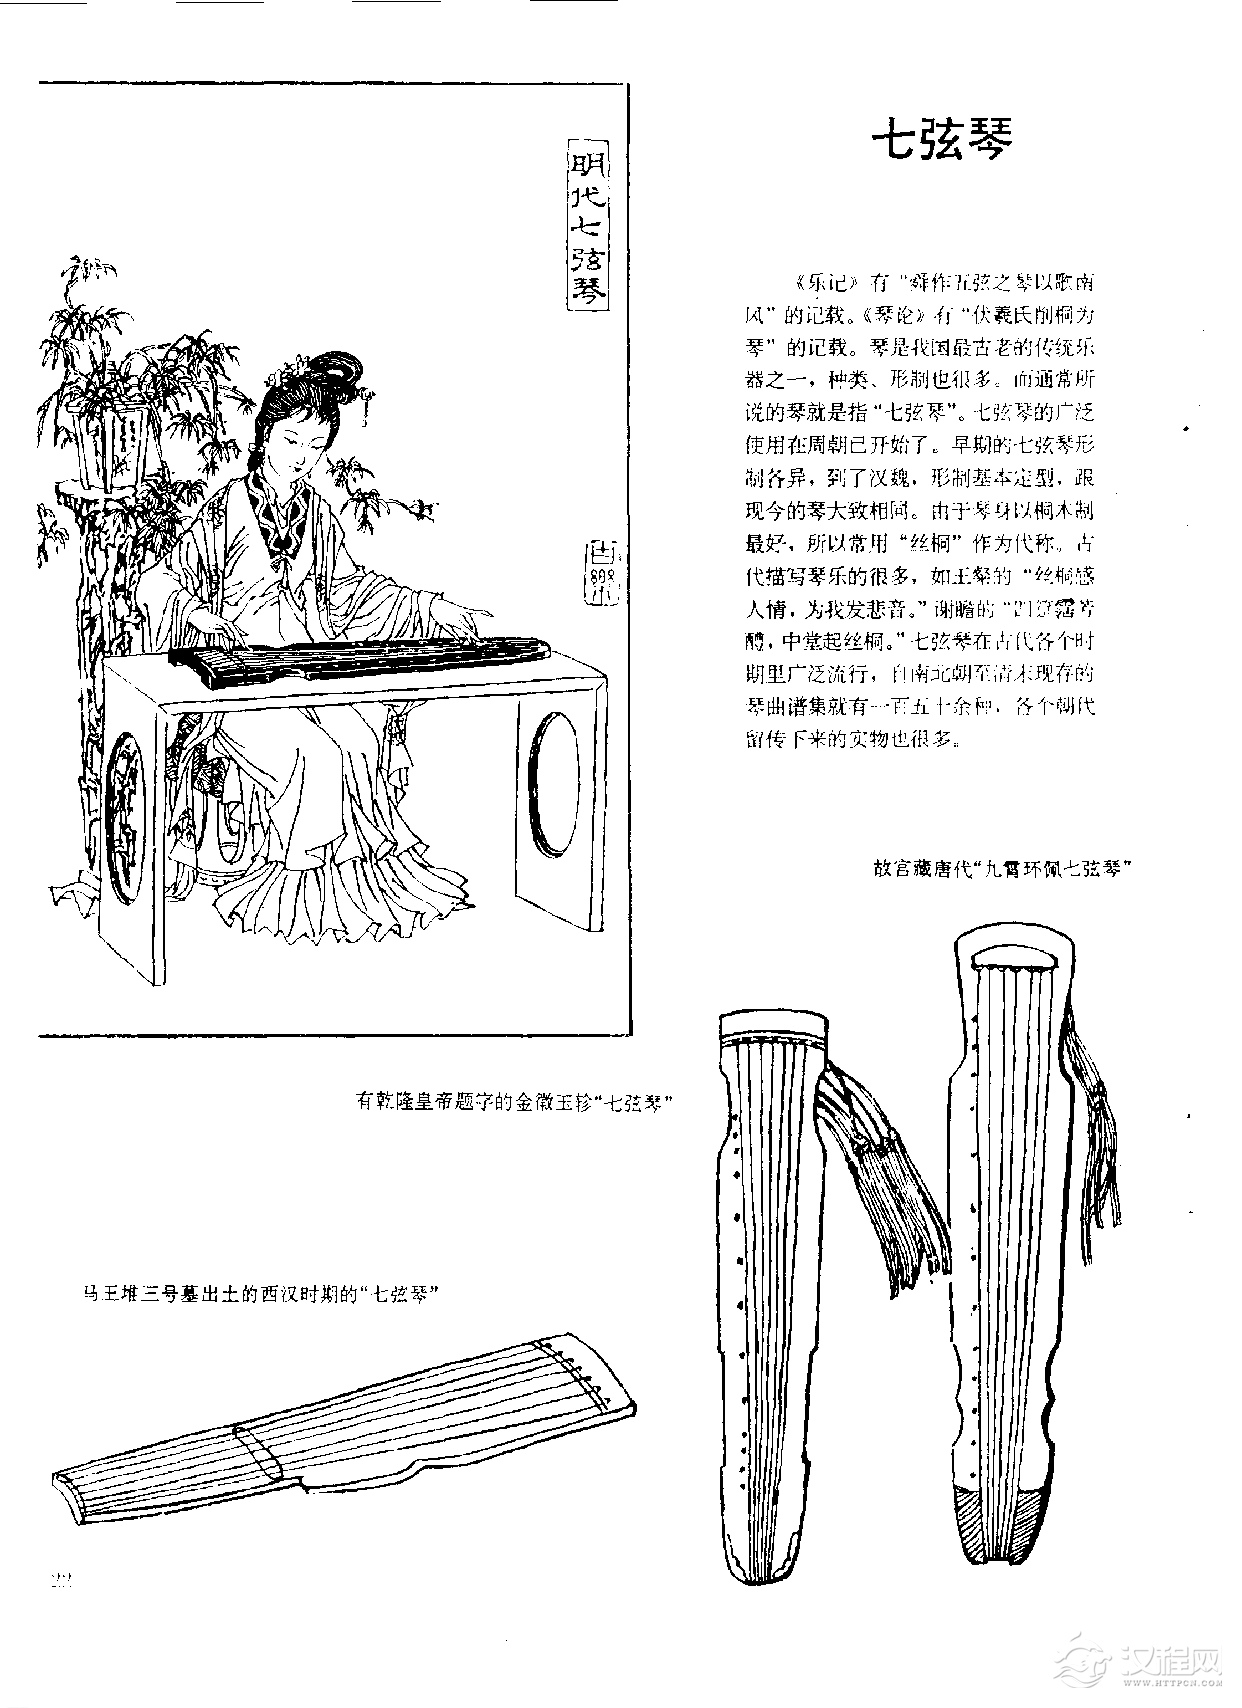 中国古代乐器《七弦琴》